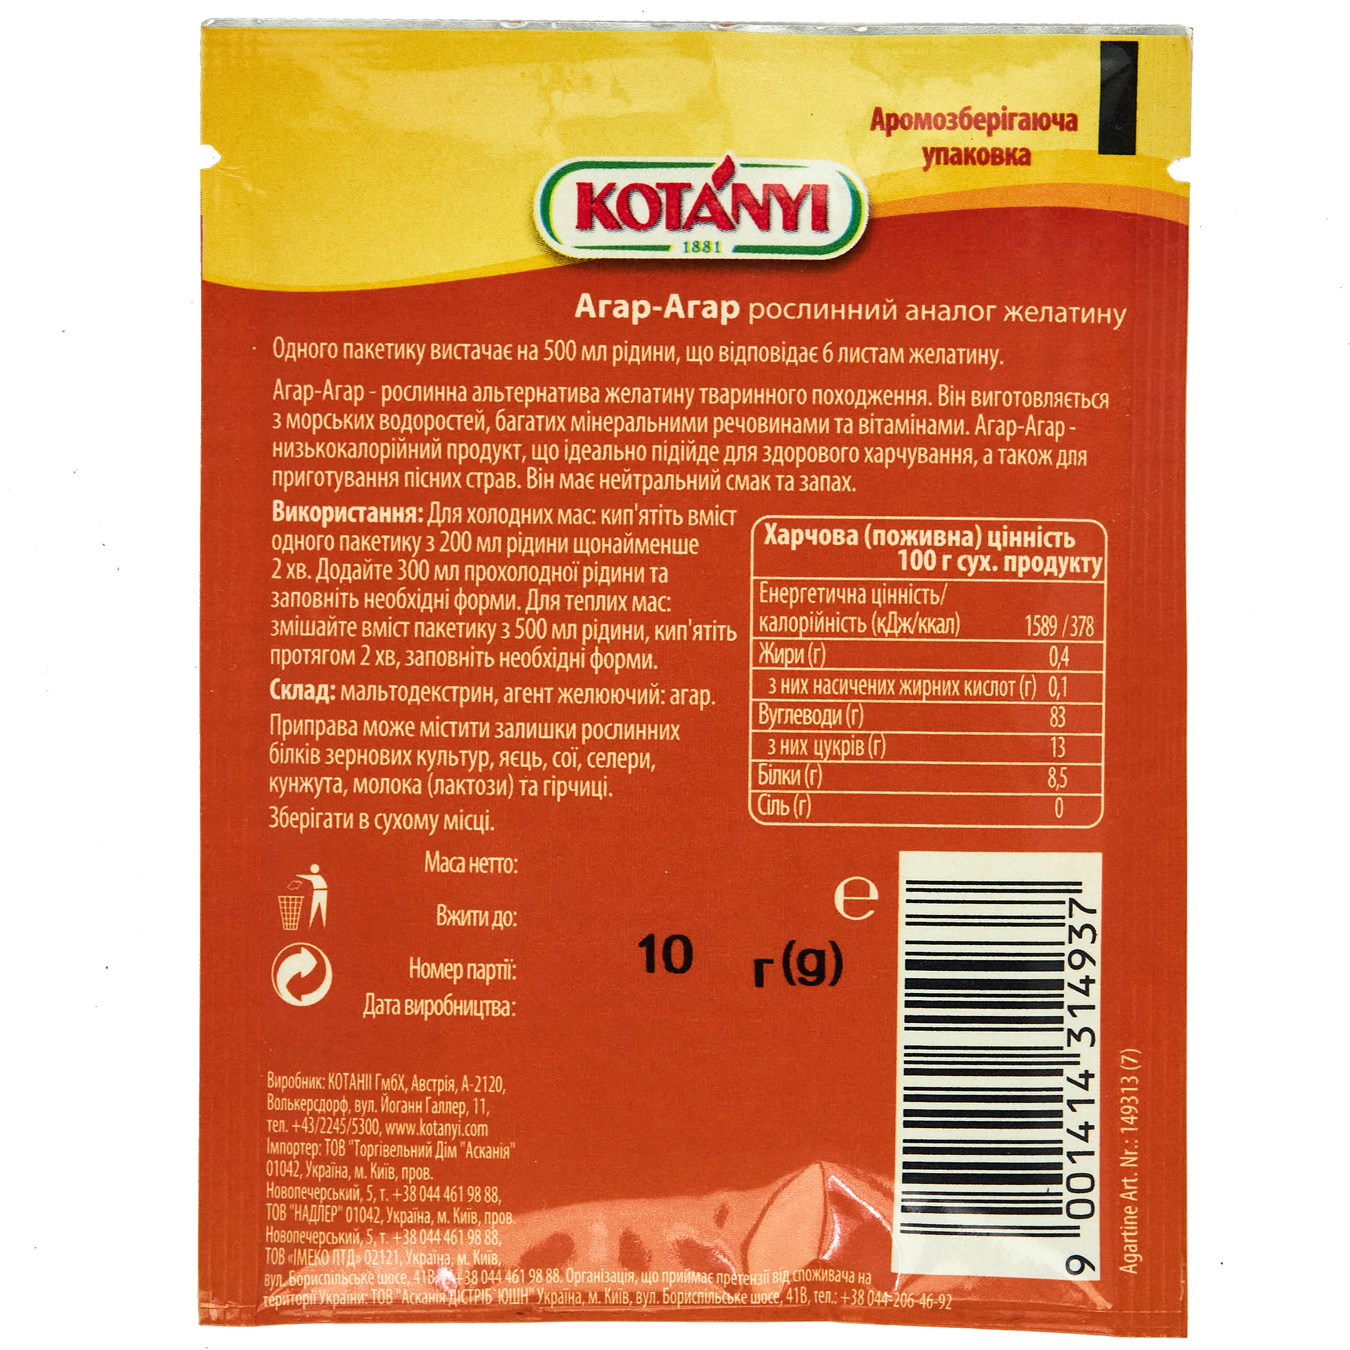 Kotanyi Agar-Agar Spices 10 g 2